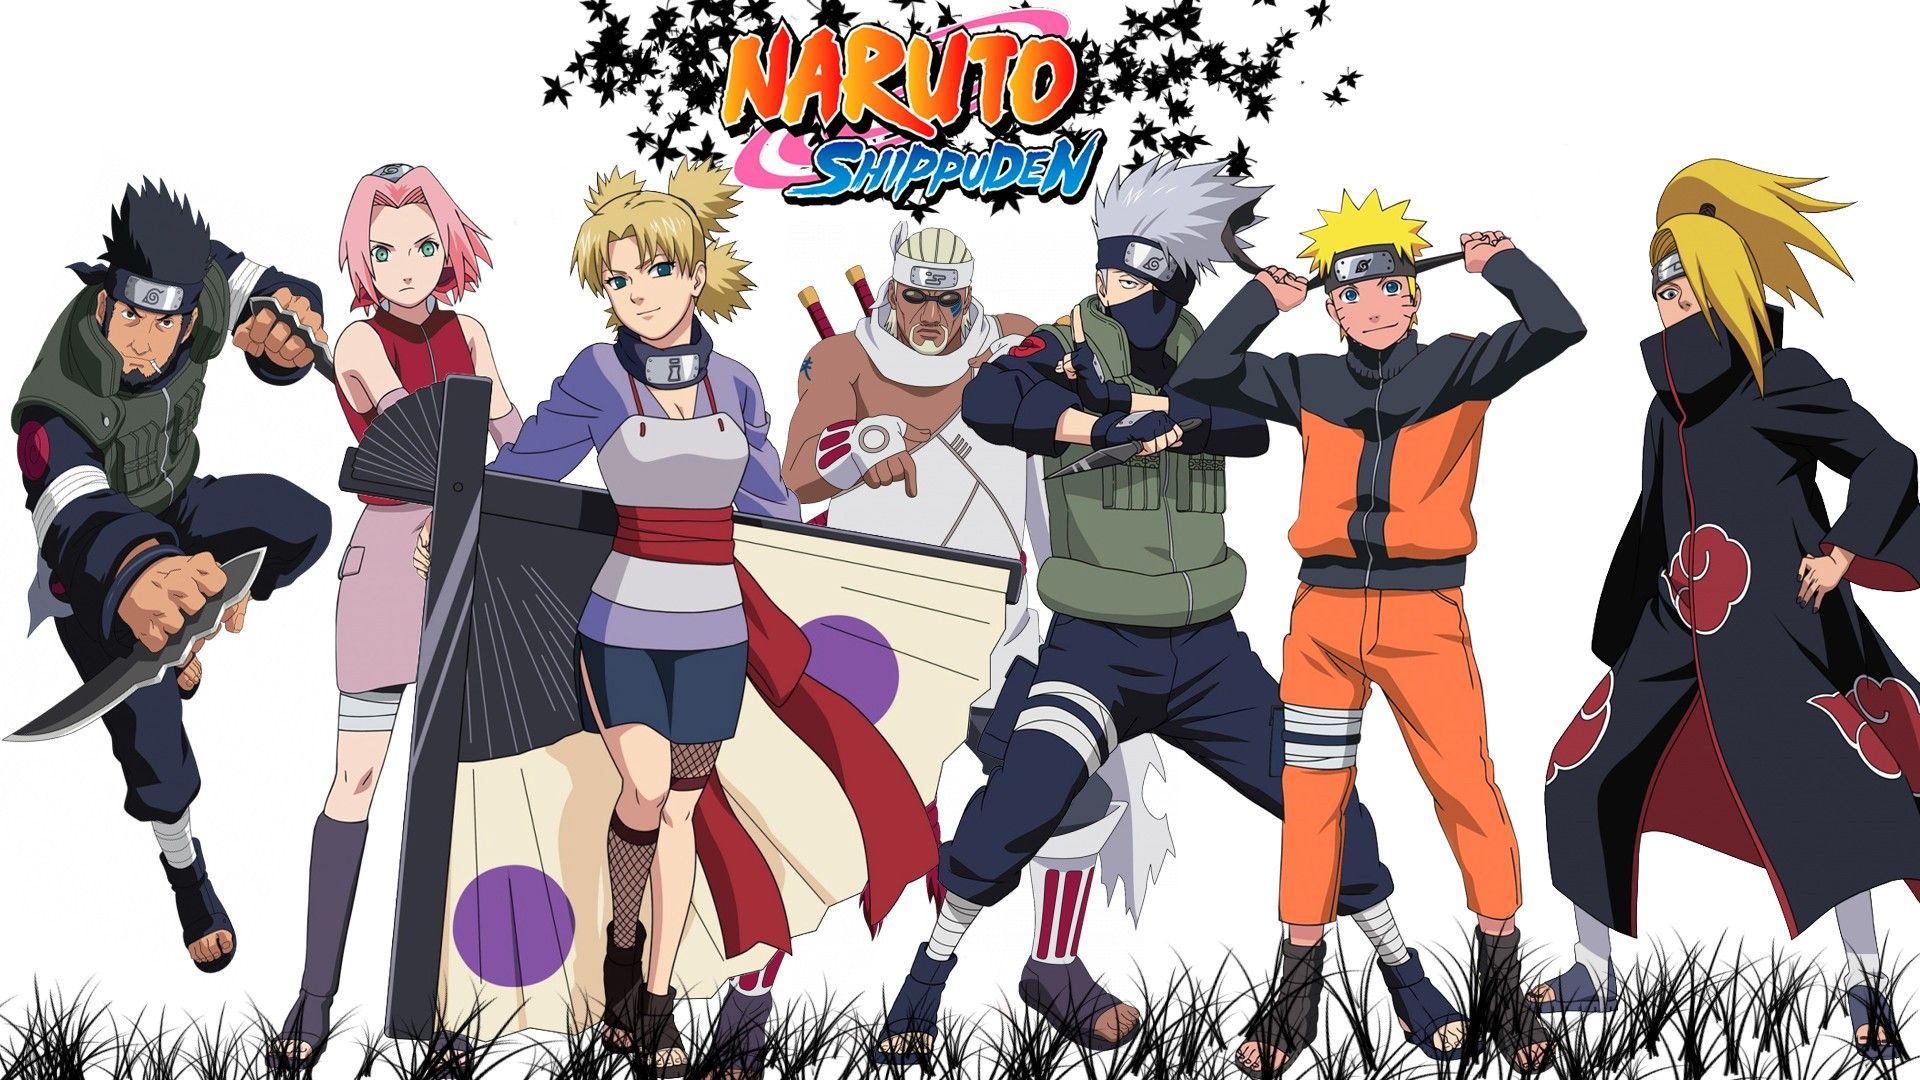 Naruto Shippuden Manga Wallpaper